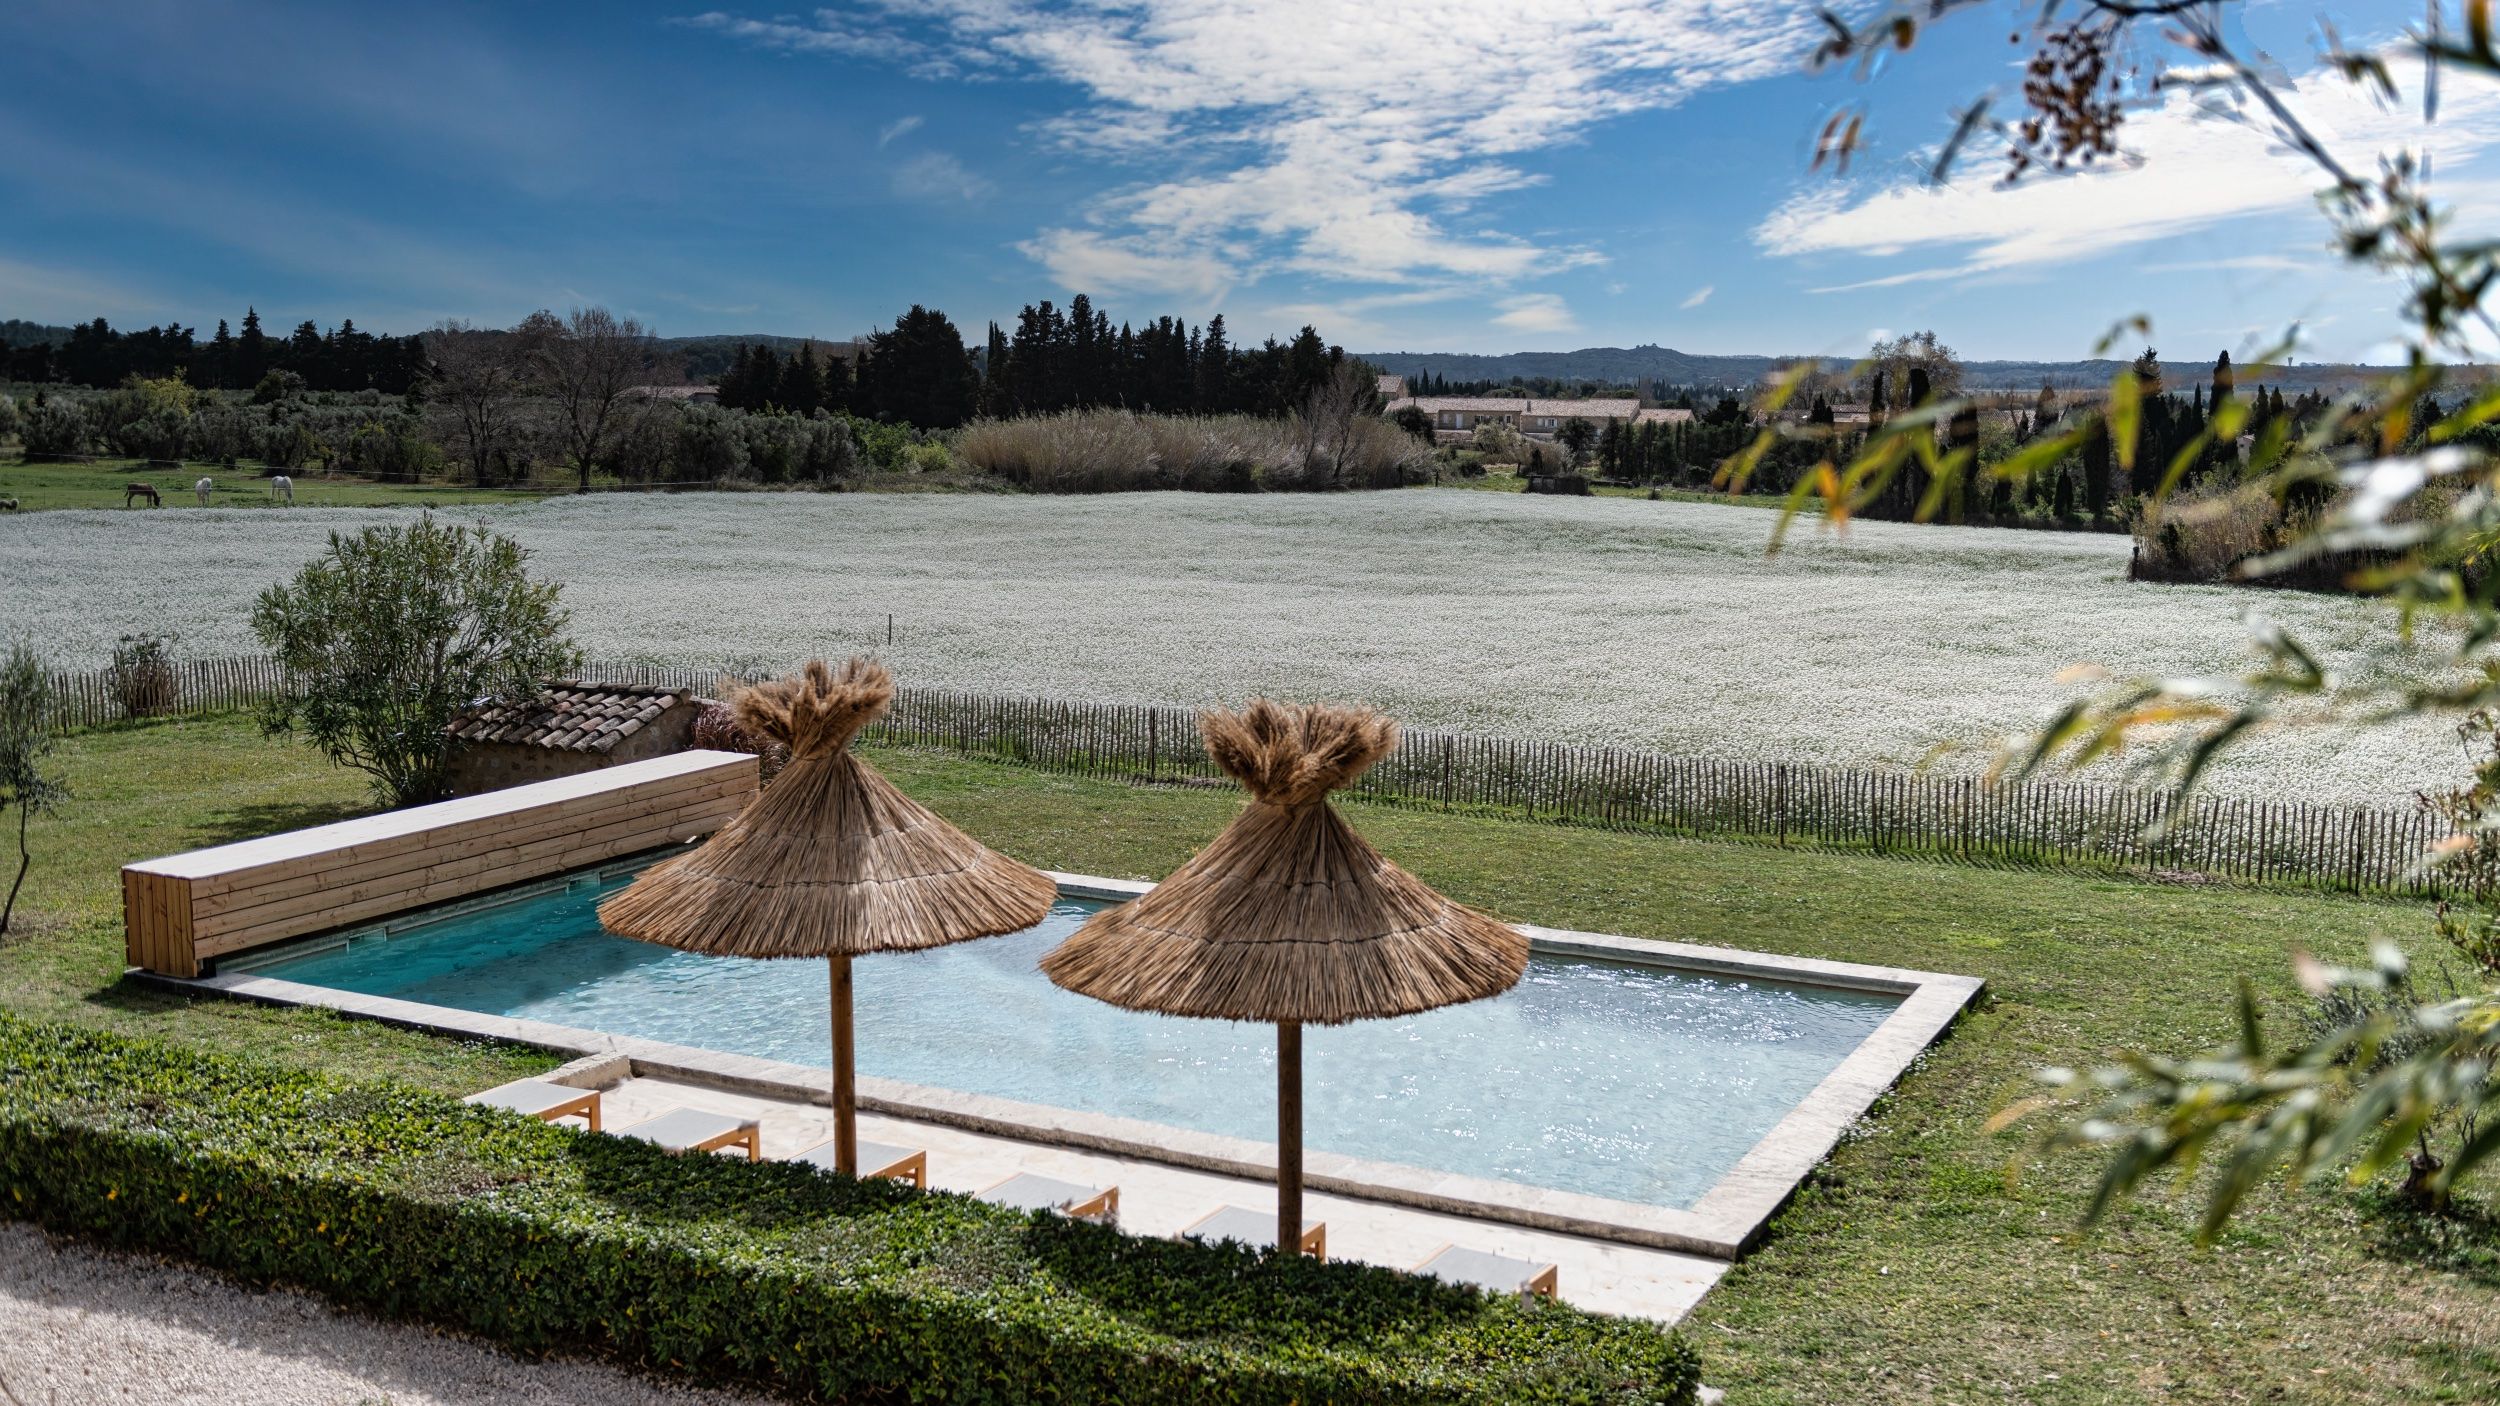 Location mas en Provence - maison de charme dans les Alpilles avec piscine chauffée